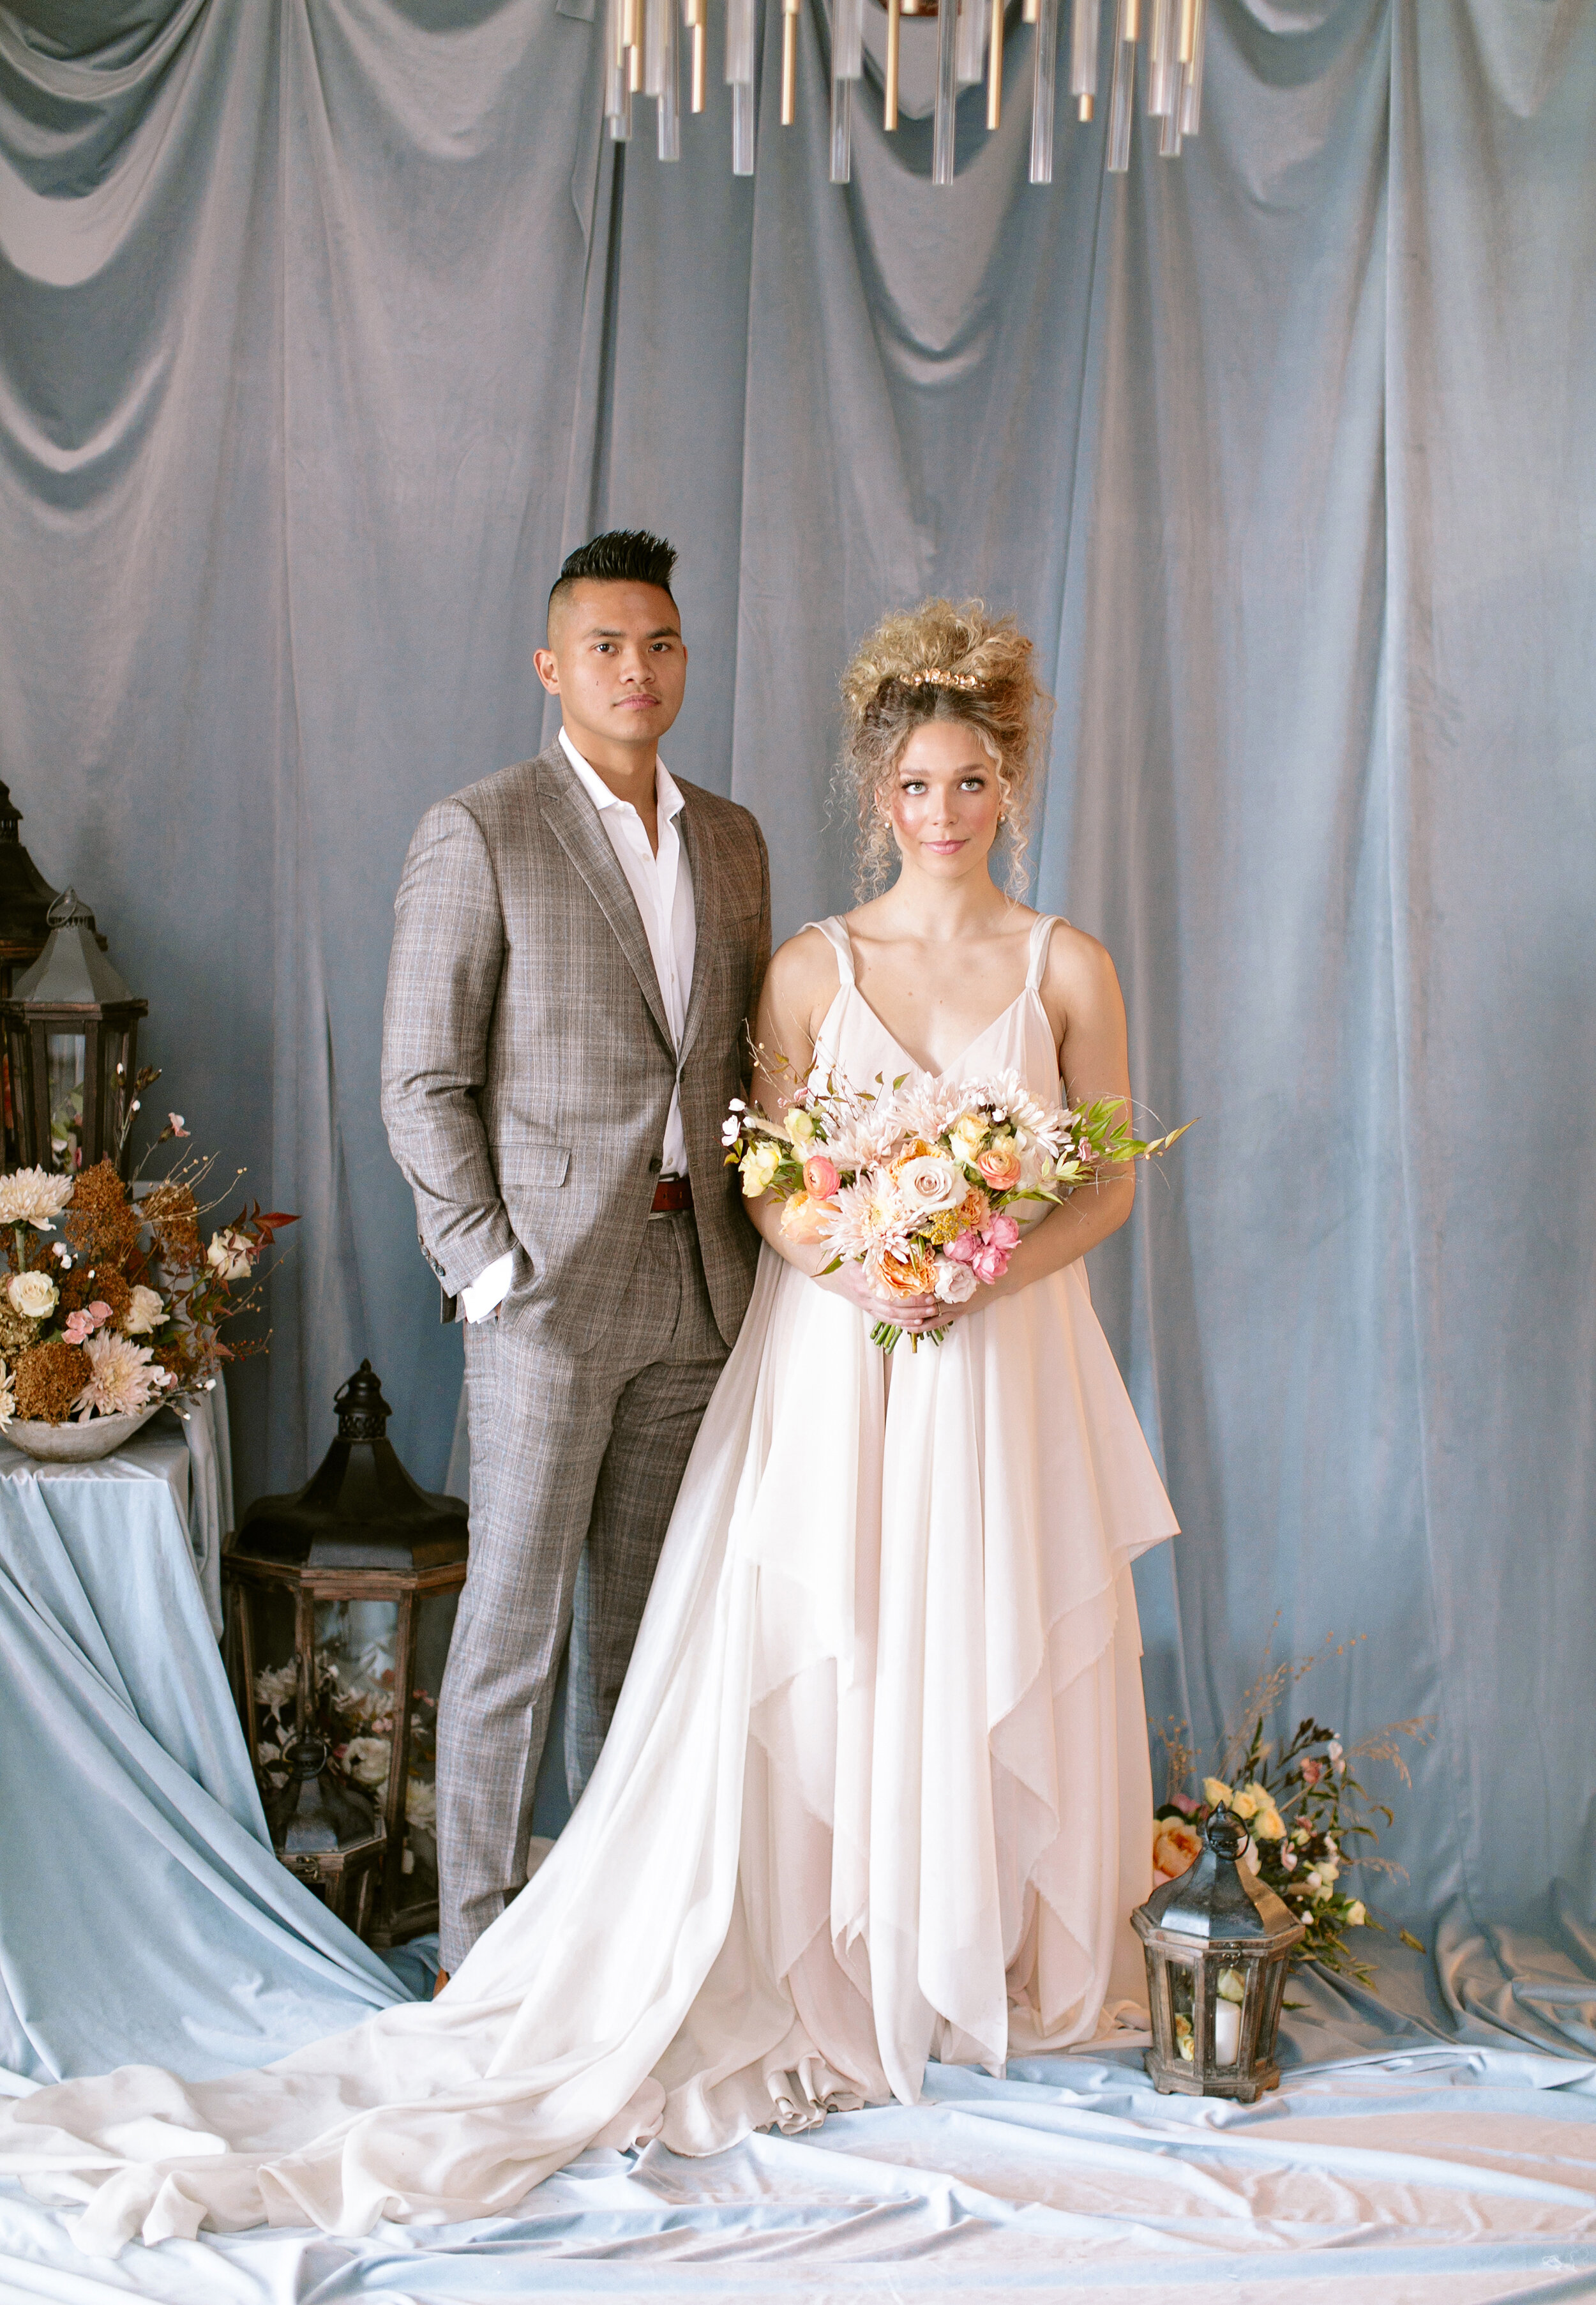 Wedding Inspiration - Bride and Groom Style - Venue308 Bronte Bride Blog Feature